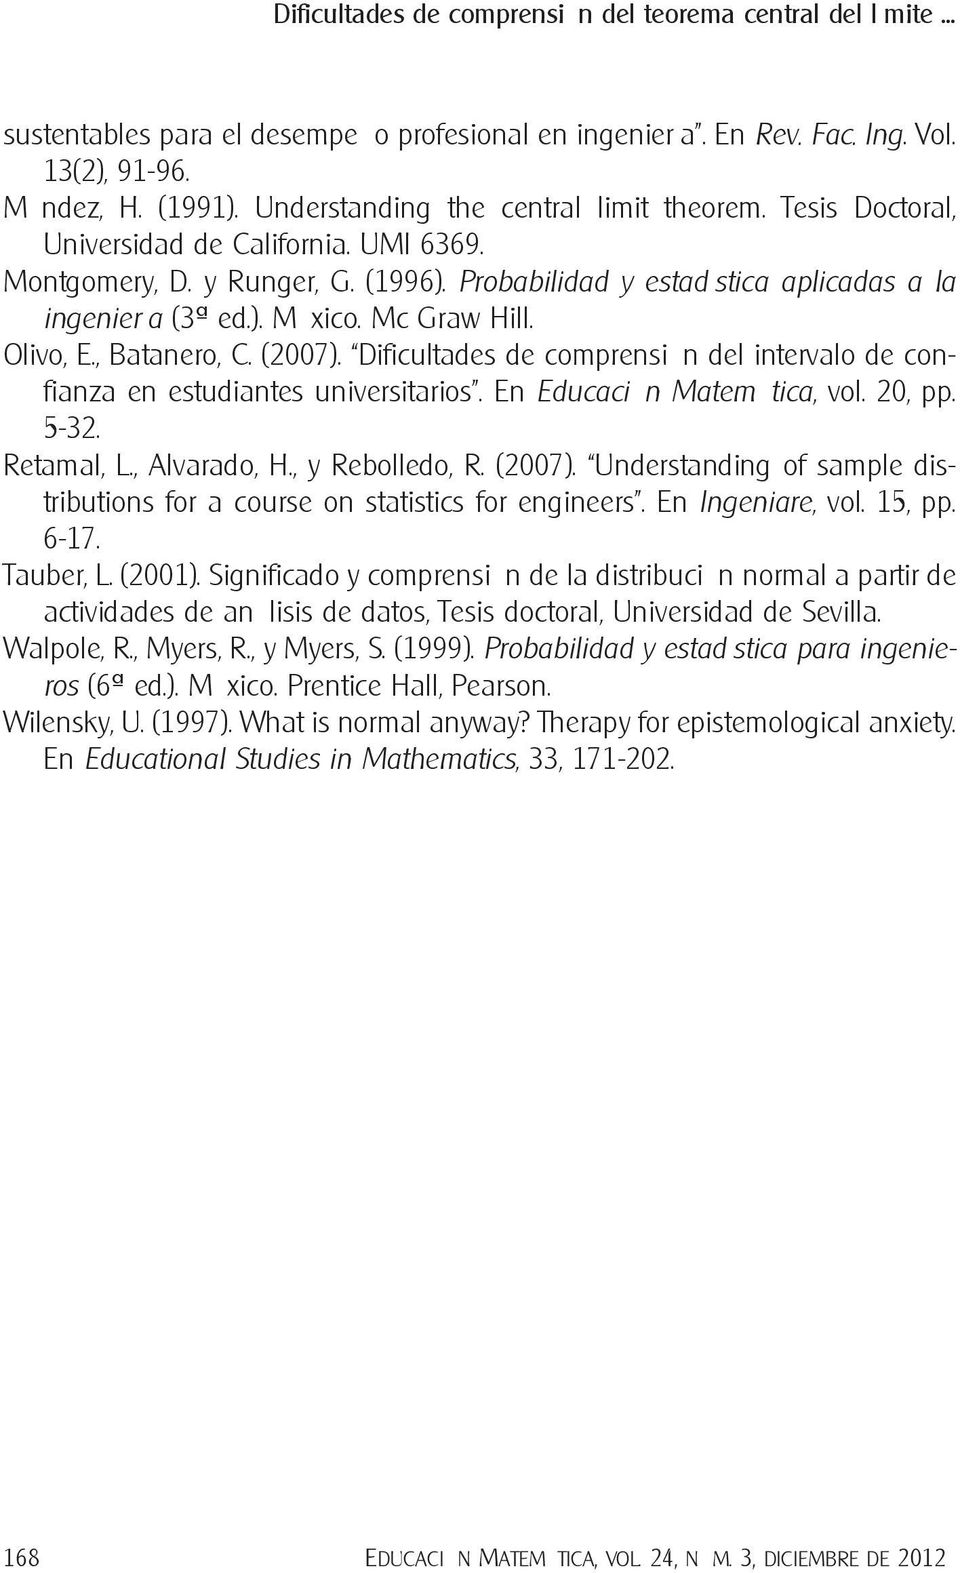 Mc Graw Hill. Olivo, E., Batanero, C. (2007). Dificultades de comprensión del intervalo de confianza en estudiantes universitarios. En Educación Matemática, vol. 20, pp. 5-32. Retamal, L.